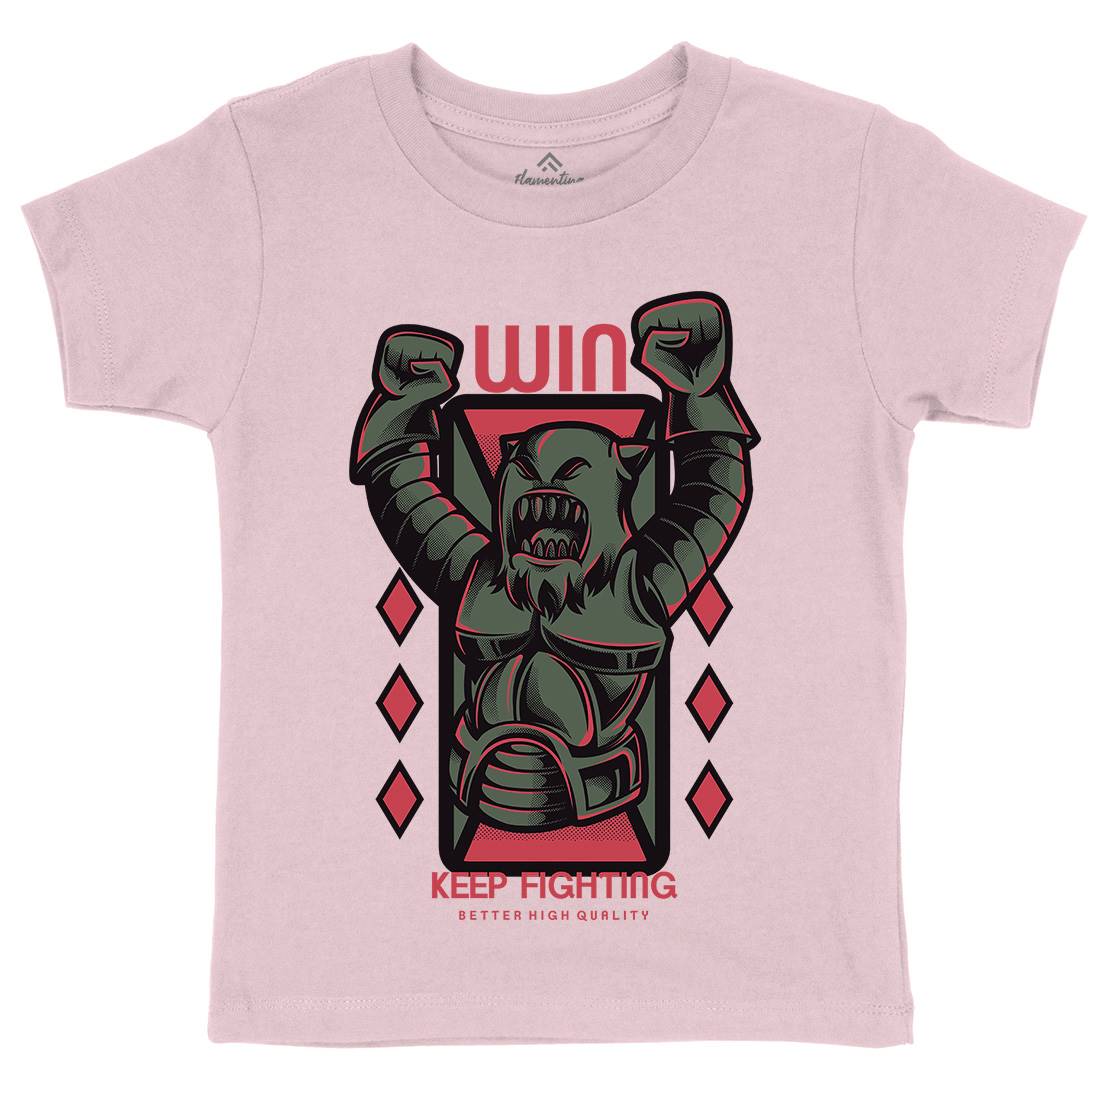 Win Fight Kids Crew Neck T-Shirt Warriors D883